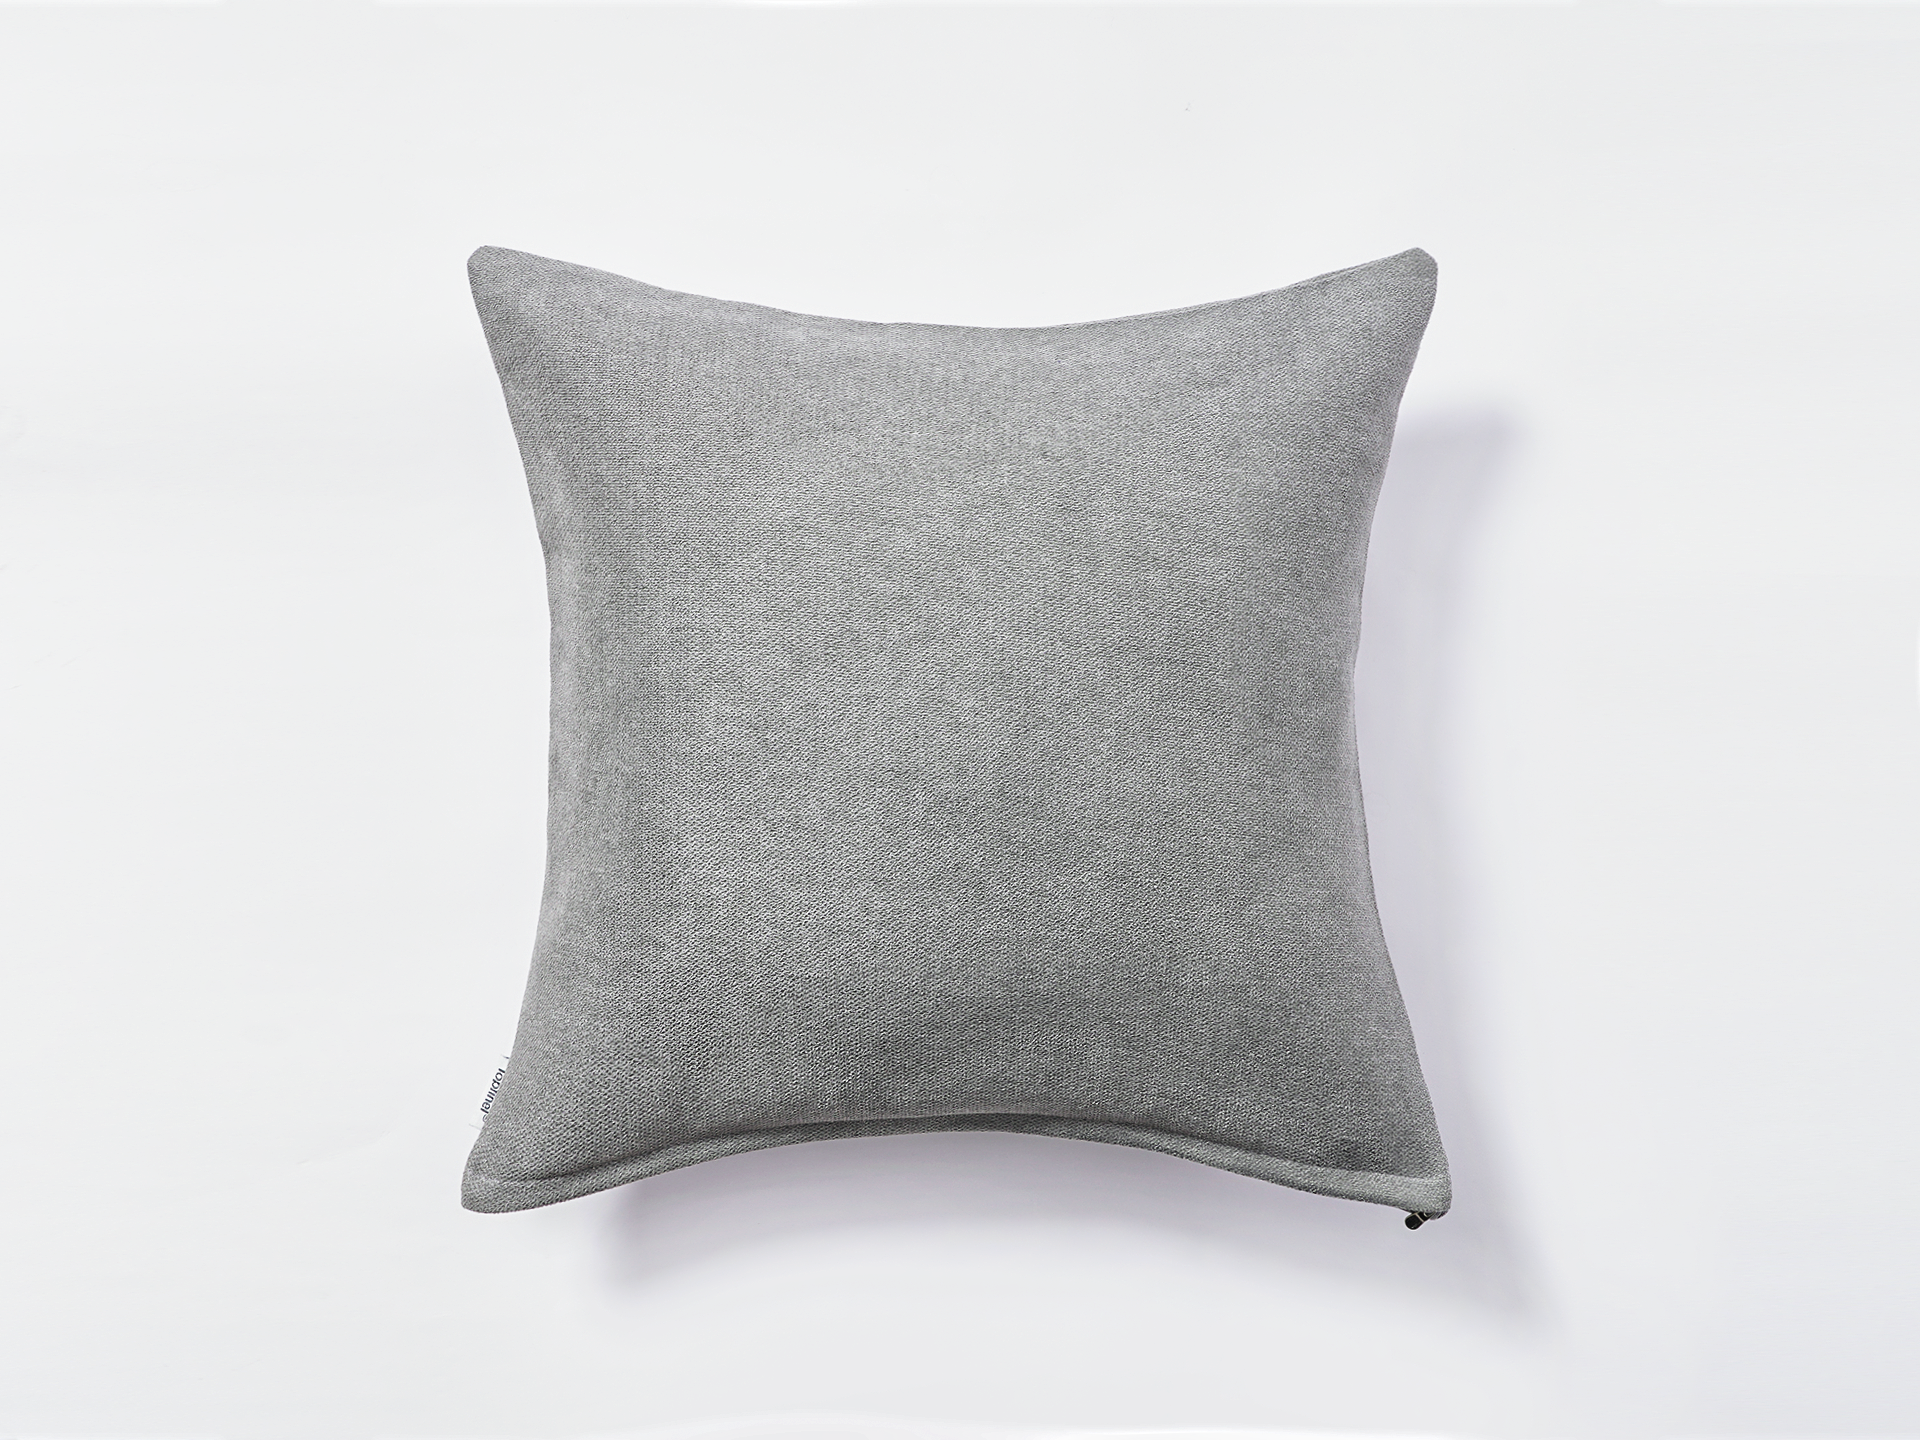 Topfinel decorative pillow covers chenille